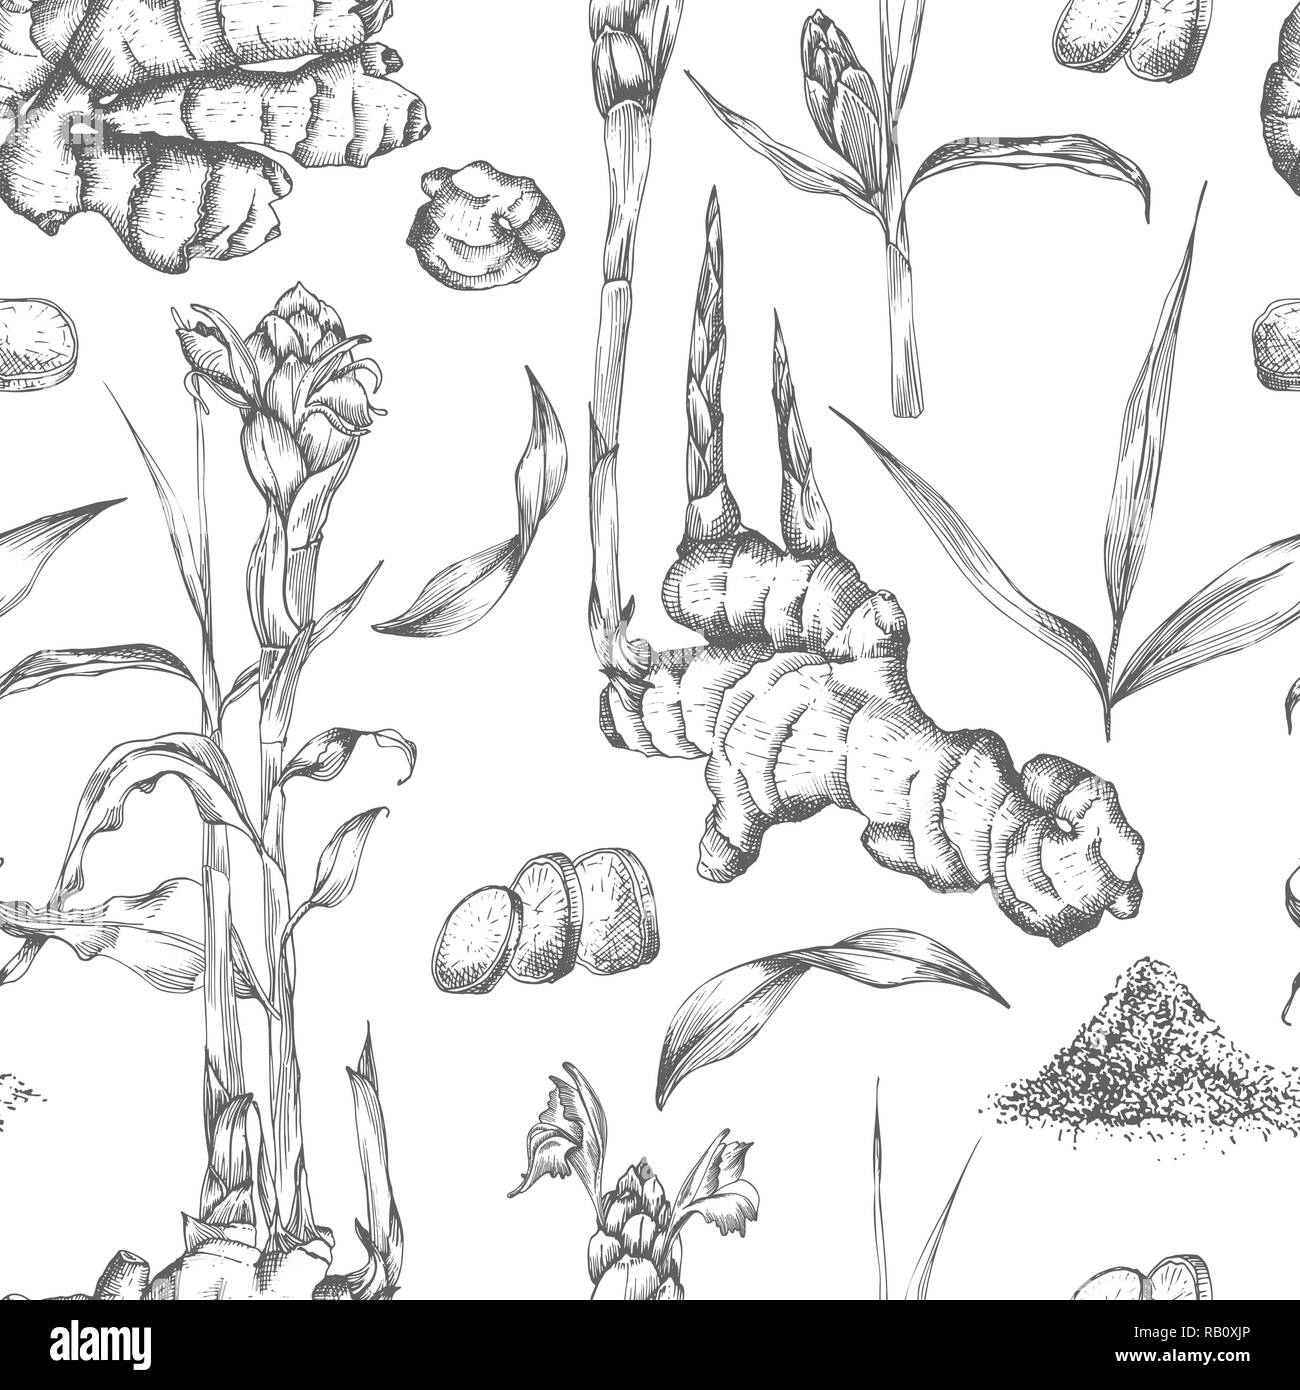 Nahtlose Muster Hand gezeichnet von Ingwer Wurzeln, lebt und Blumen in schwarzer Farbe auf weißem Hintergrund. Retro Vintage Grafikdesign. botanische Zeichnung, Gravur Stil Stock Vektor